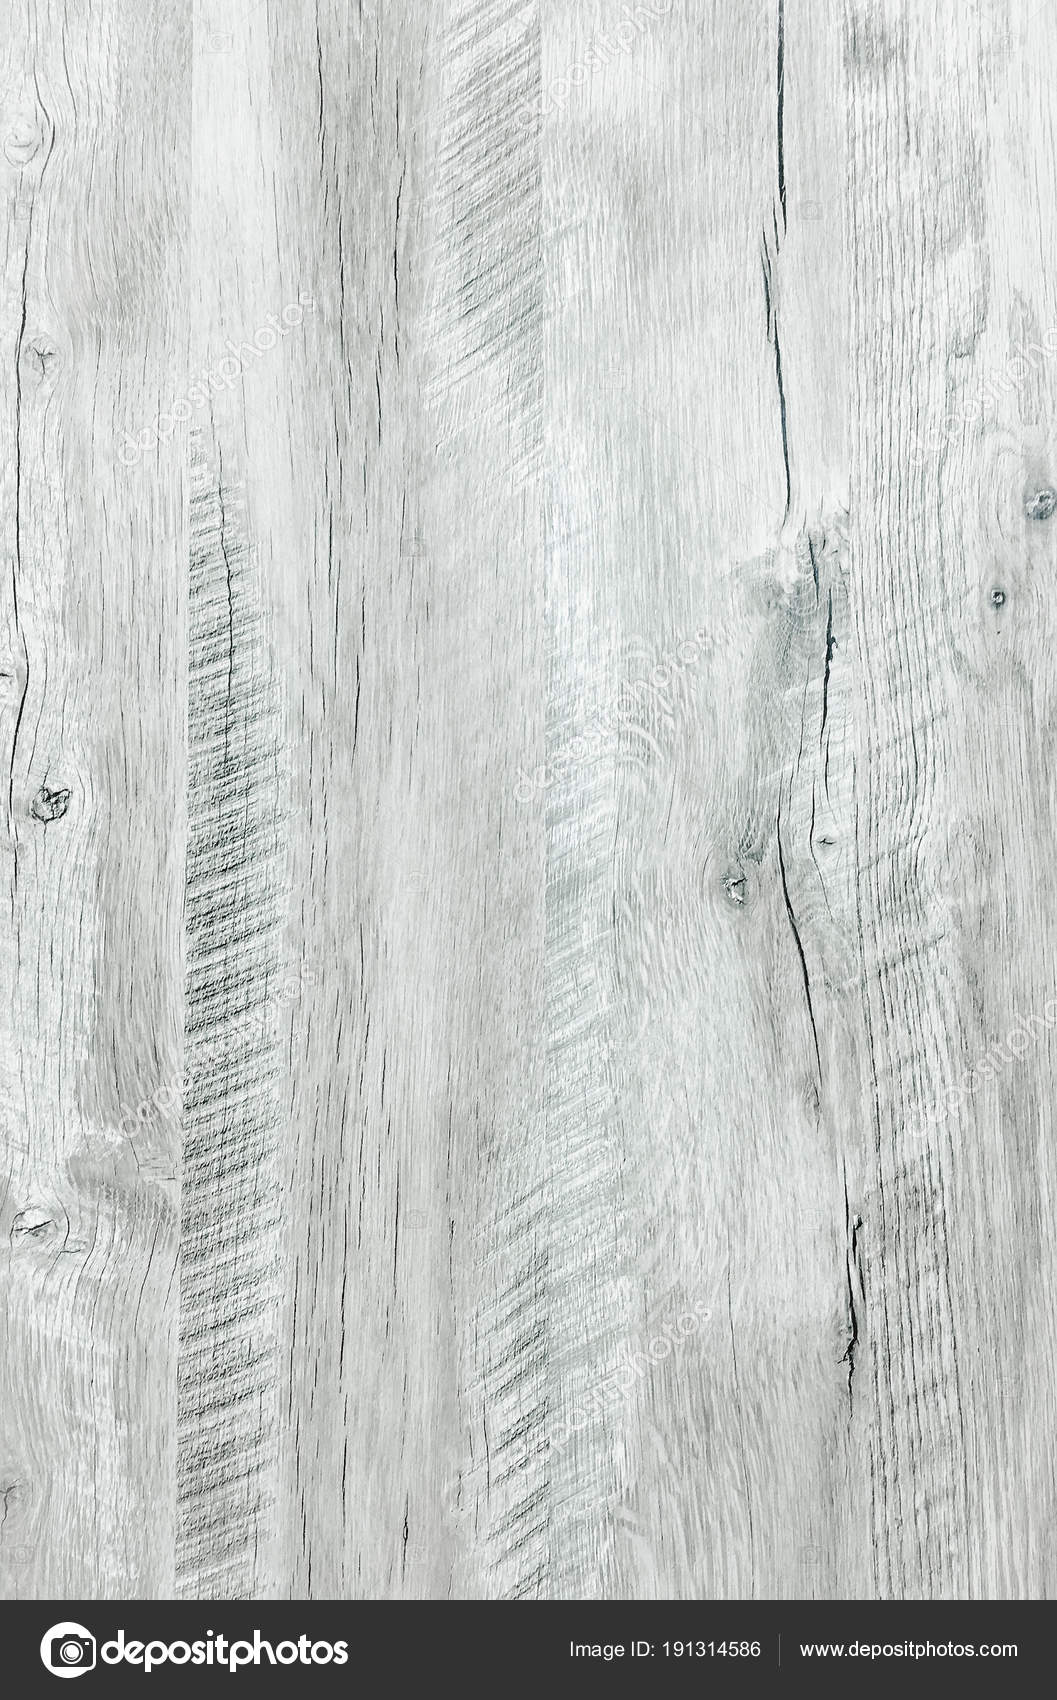 Atticus rebanada sinsonte Superficie de textura de madera suave lavado blanco claro como fondo.  Grunge blanqueado barnizado tablones de madera patrón de tabla vista  superior .: fotografía de stock © t_trifonoff #191314586 | Depositphotos